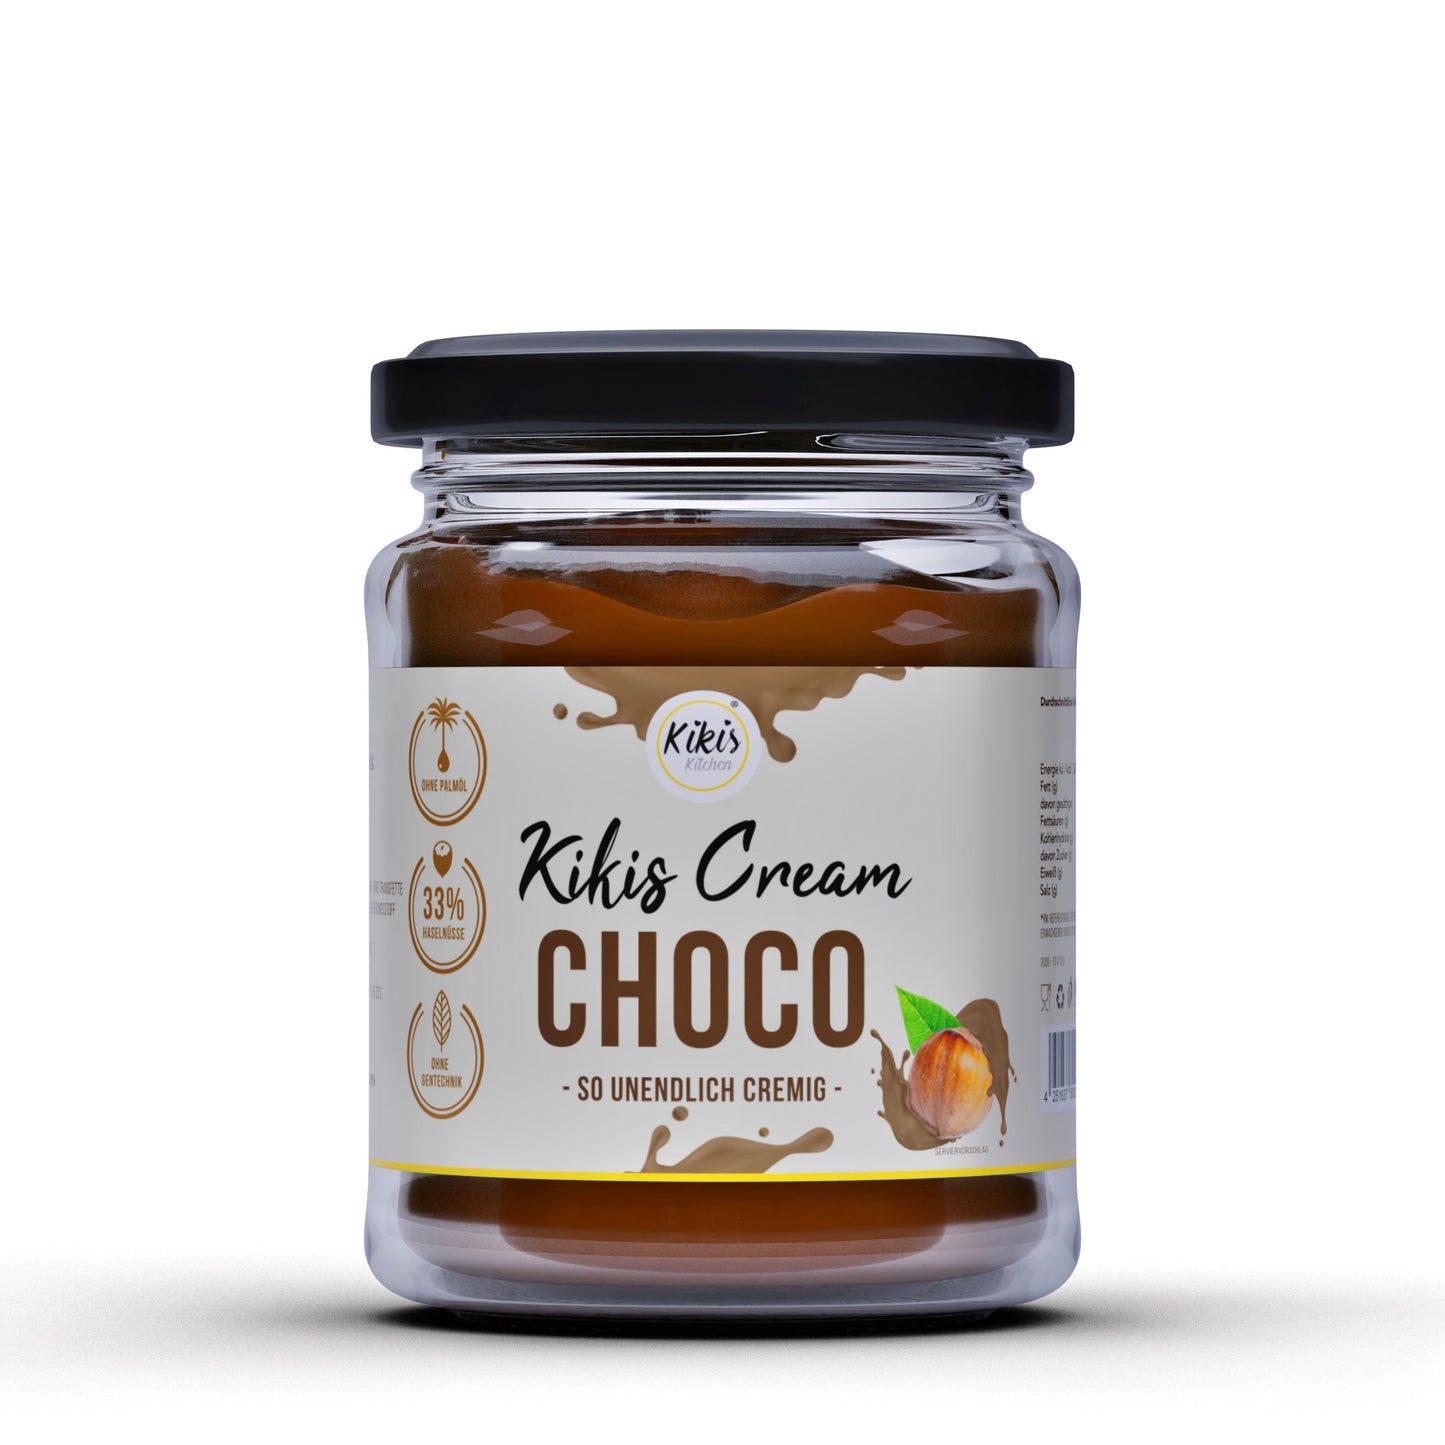 Kikis Cream CHOCO - Schoko Creme